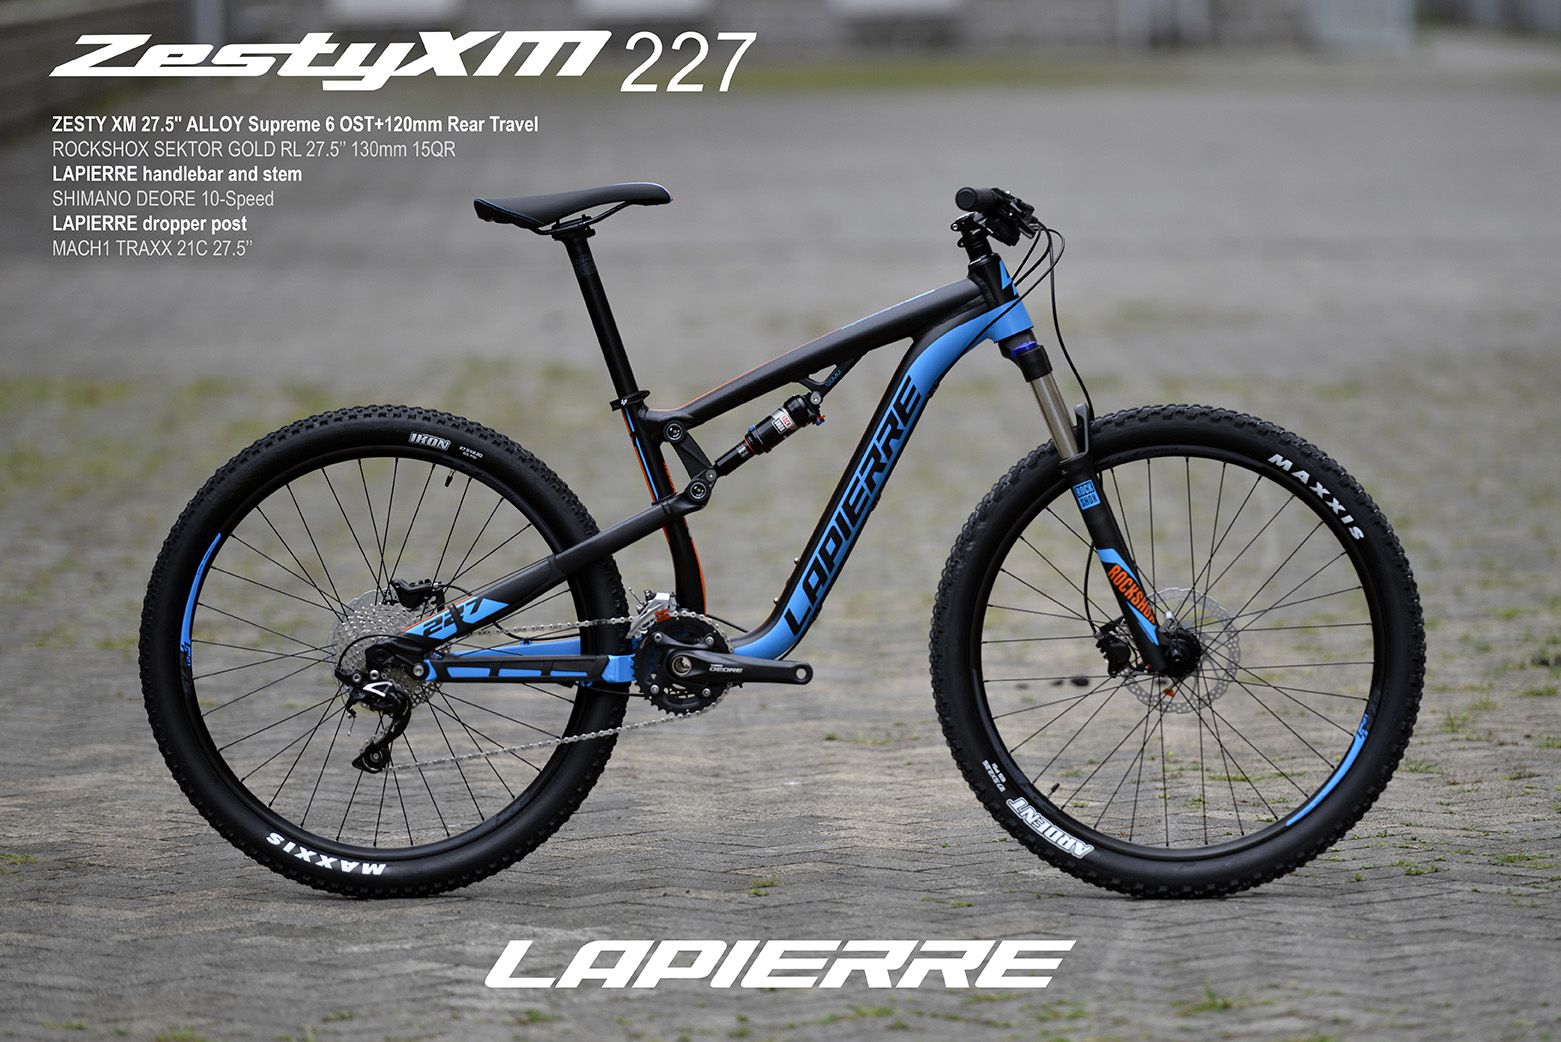 Lapierre Zesty XM 227